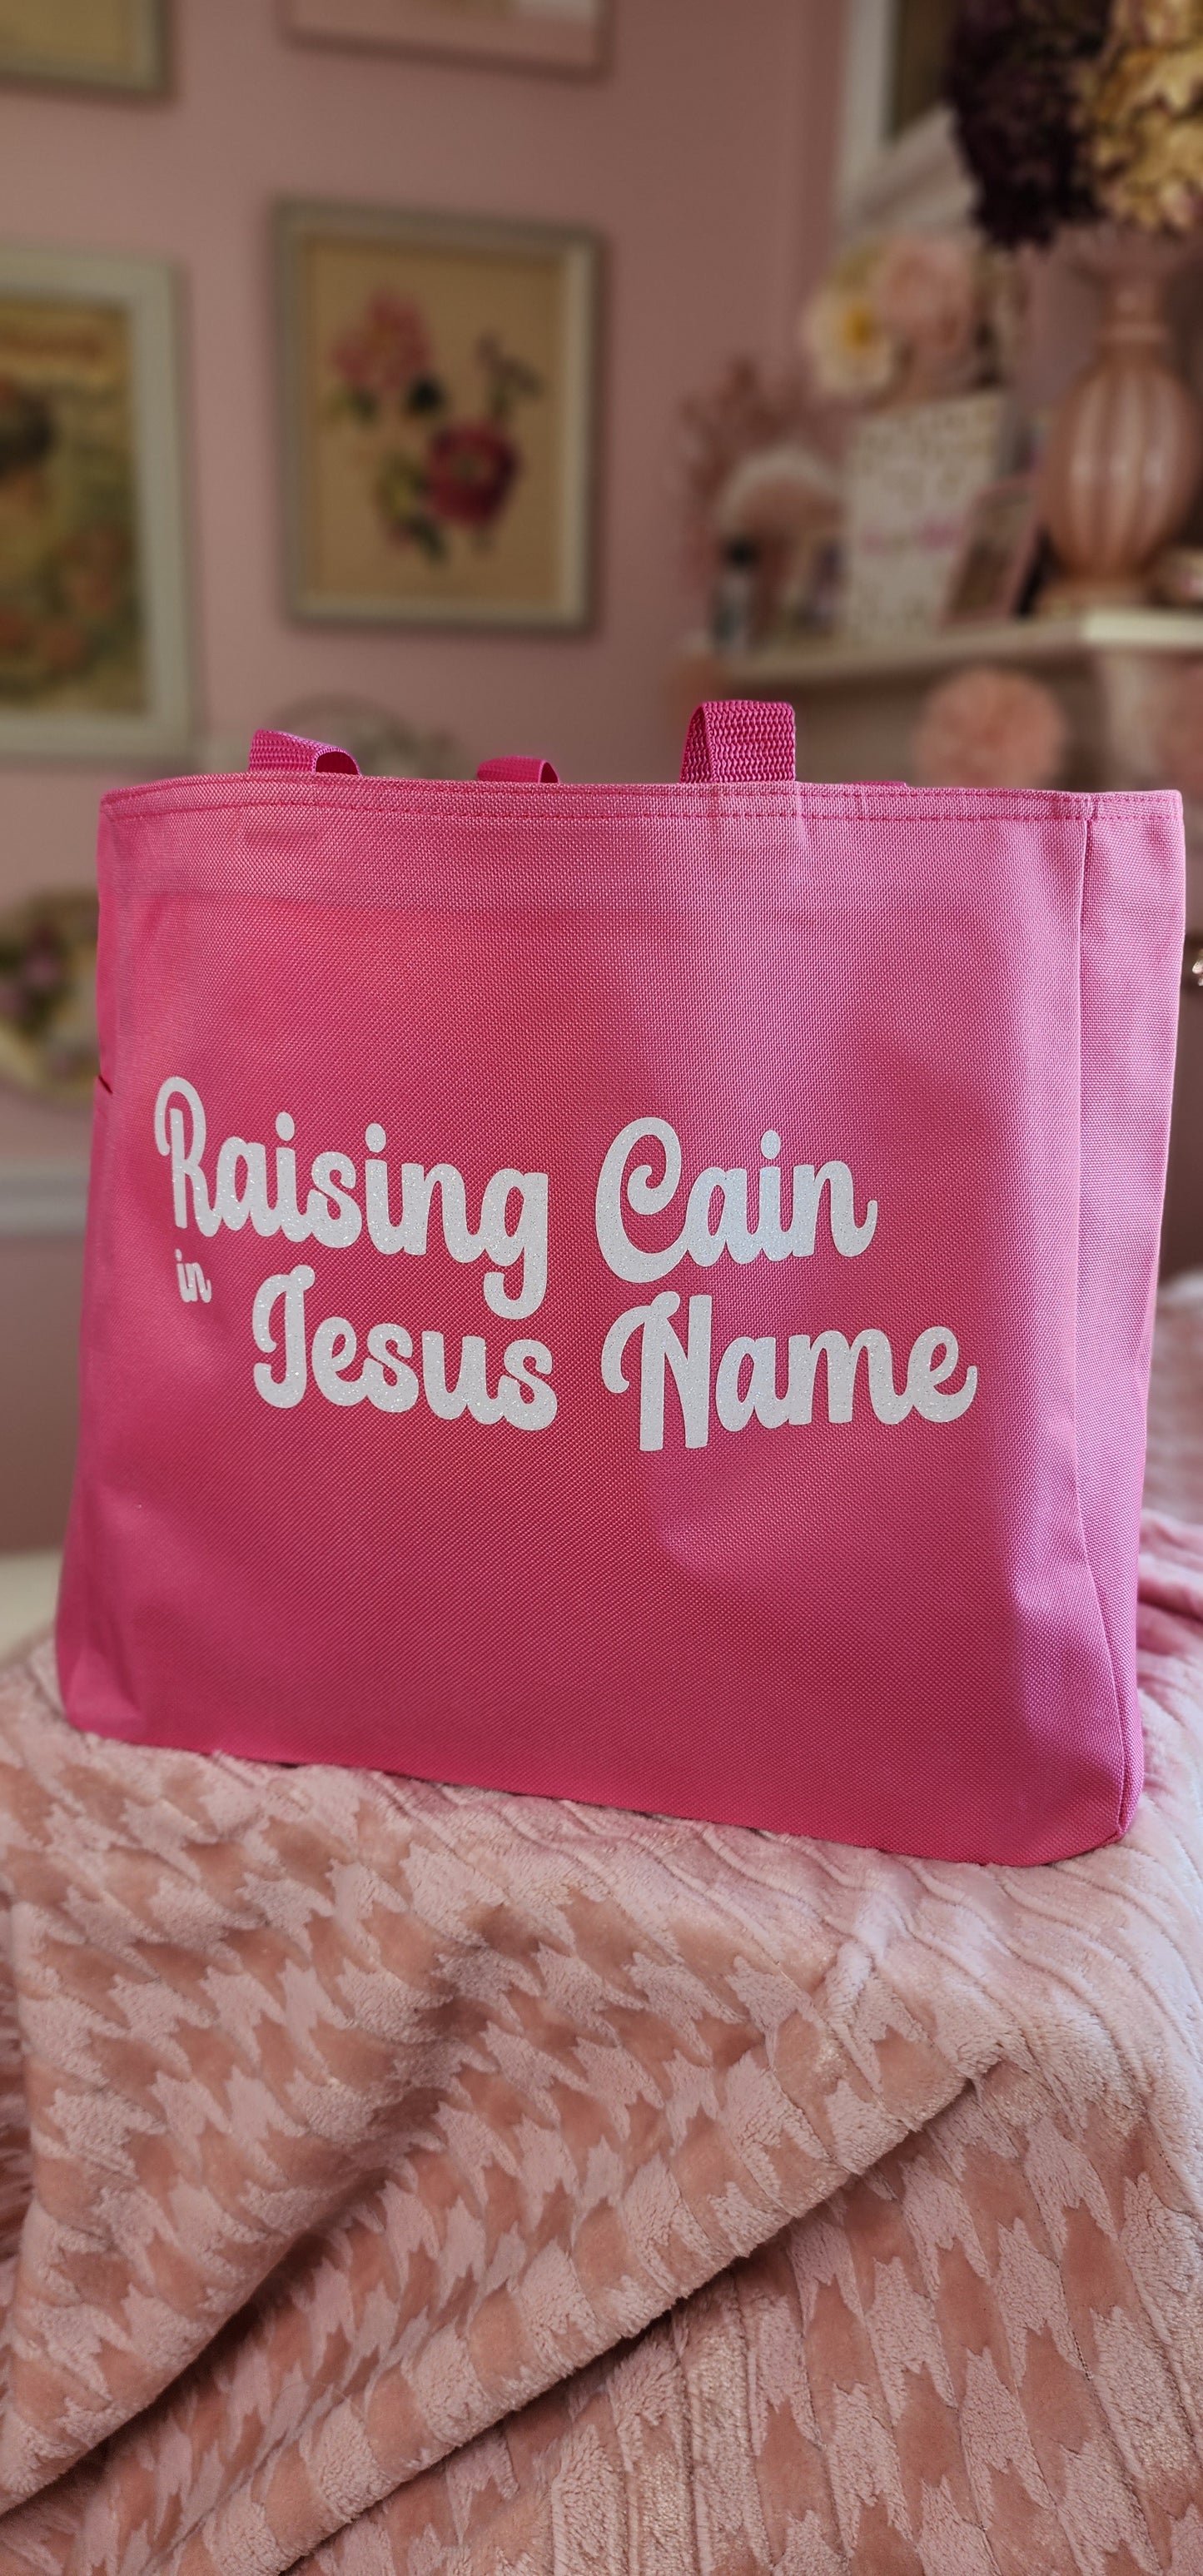 Raising Cane in Jesus Name - Tote Bag - pink